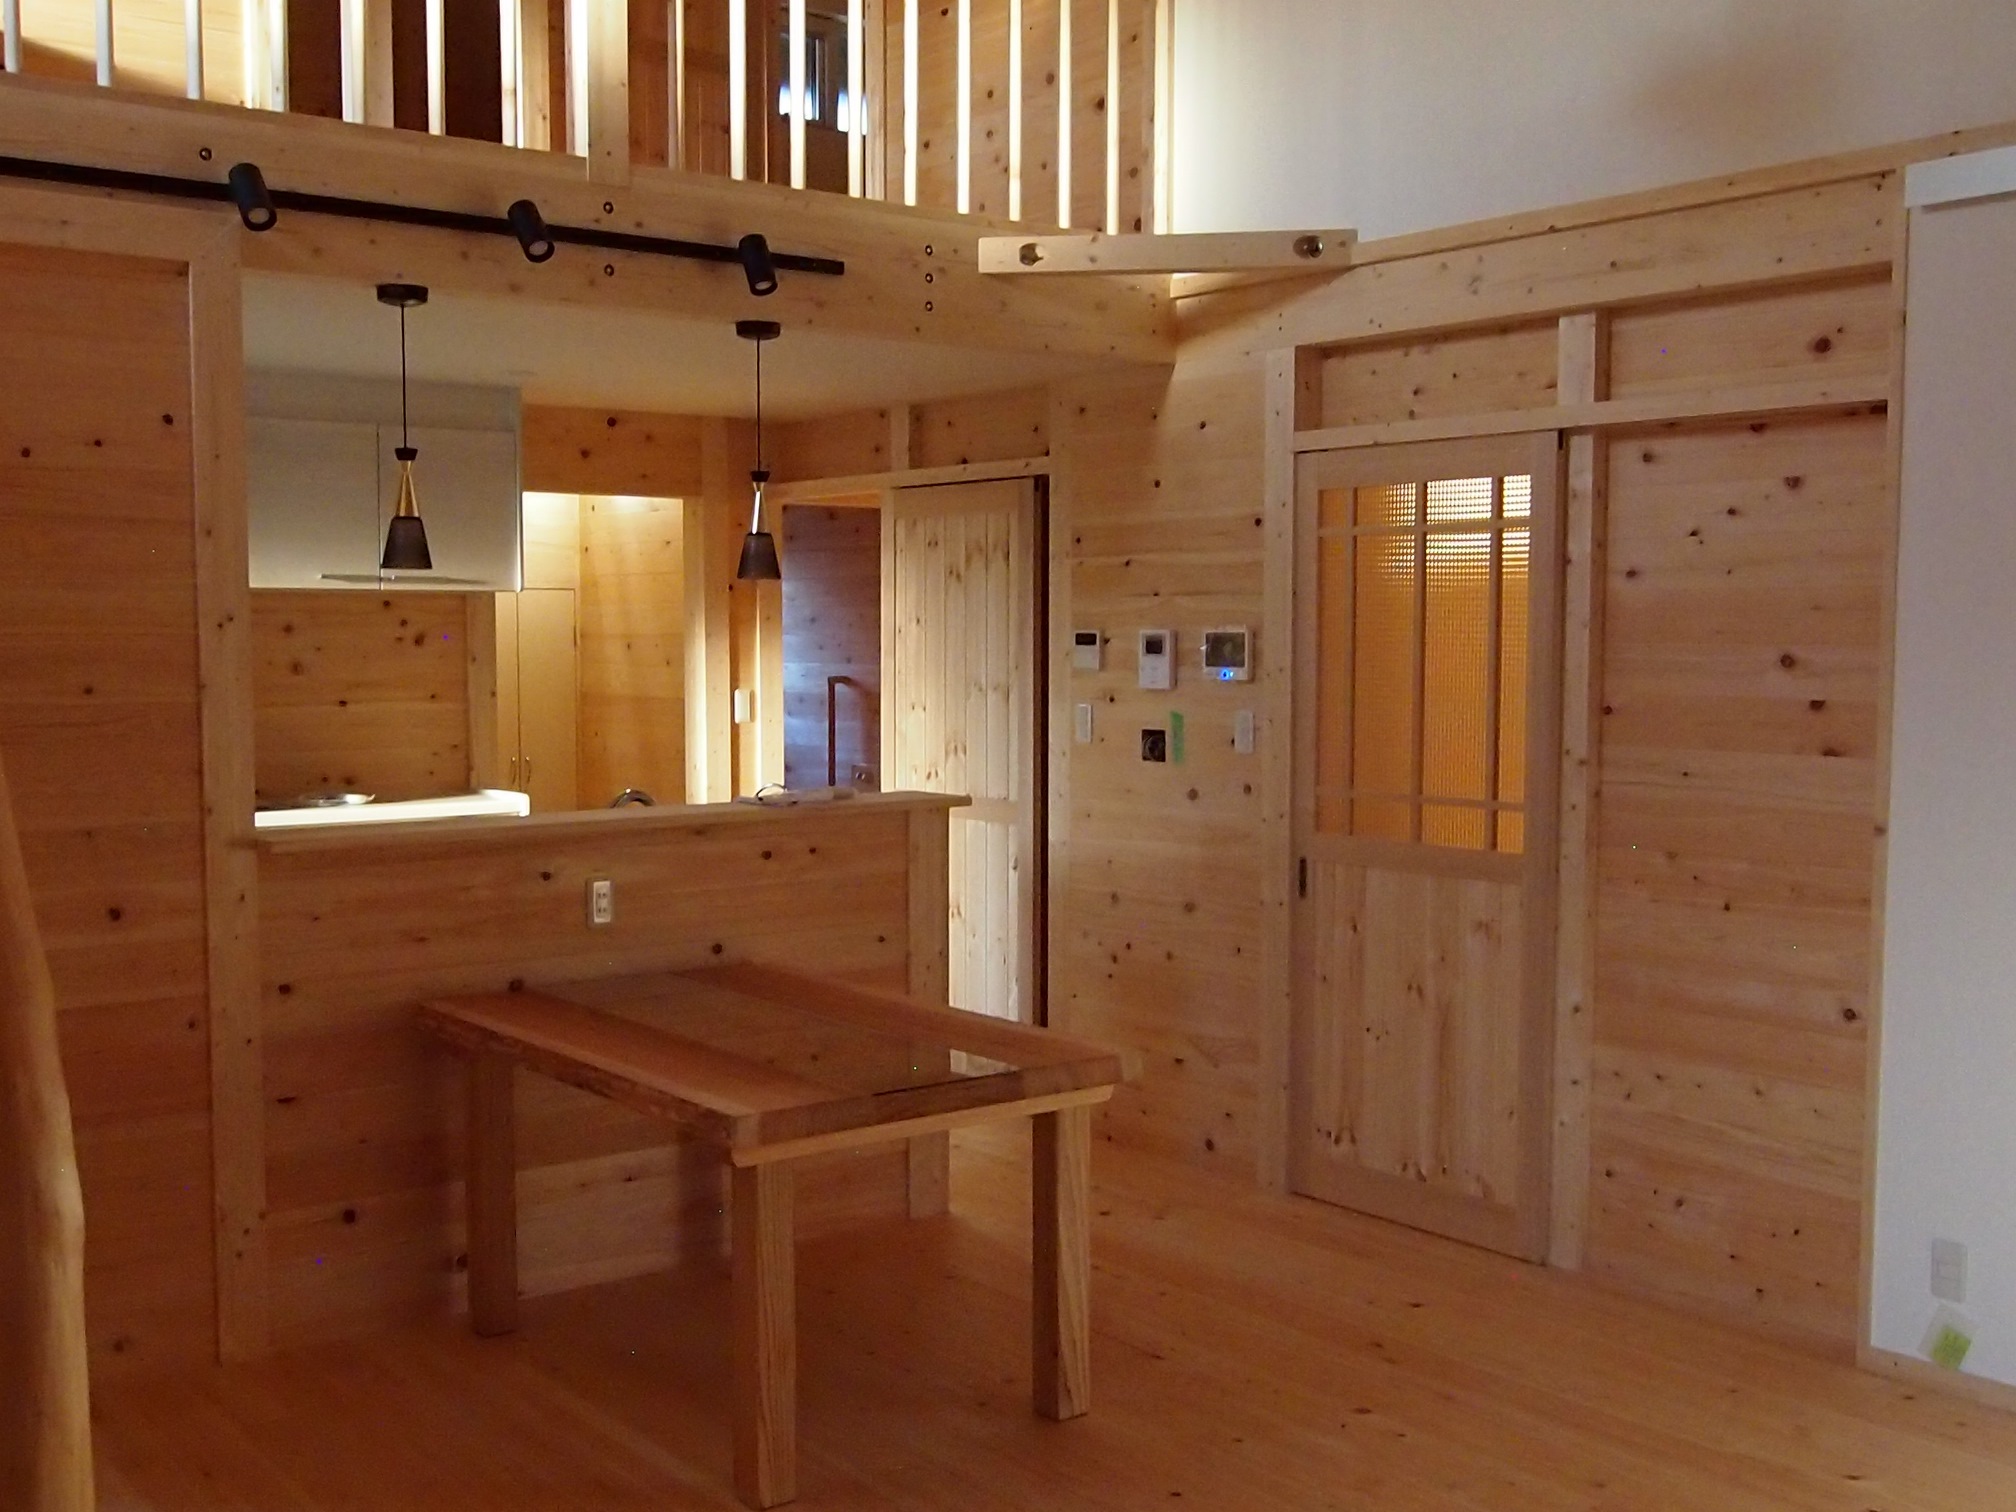 兵庫県加古川市で自然素材の家を考えている方へ、自然素材の家について